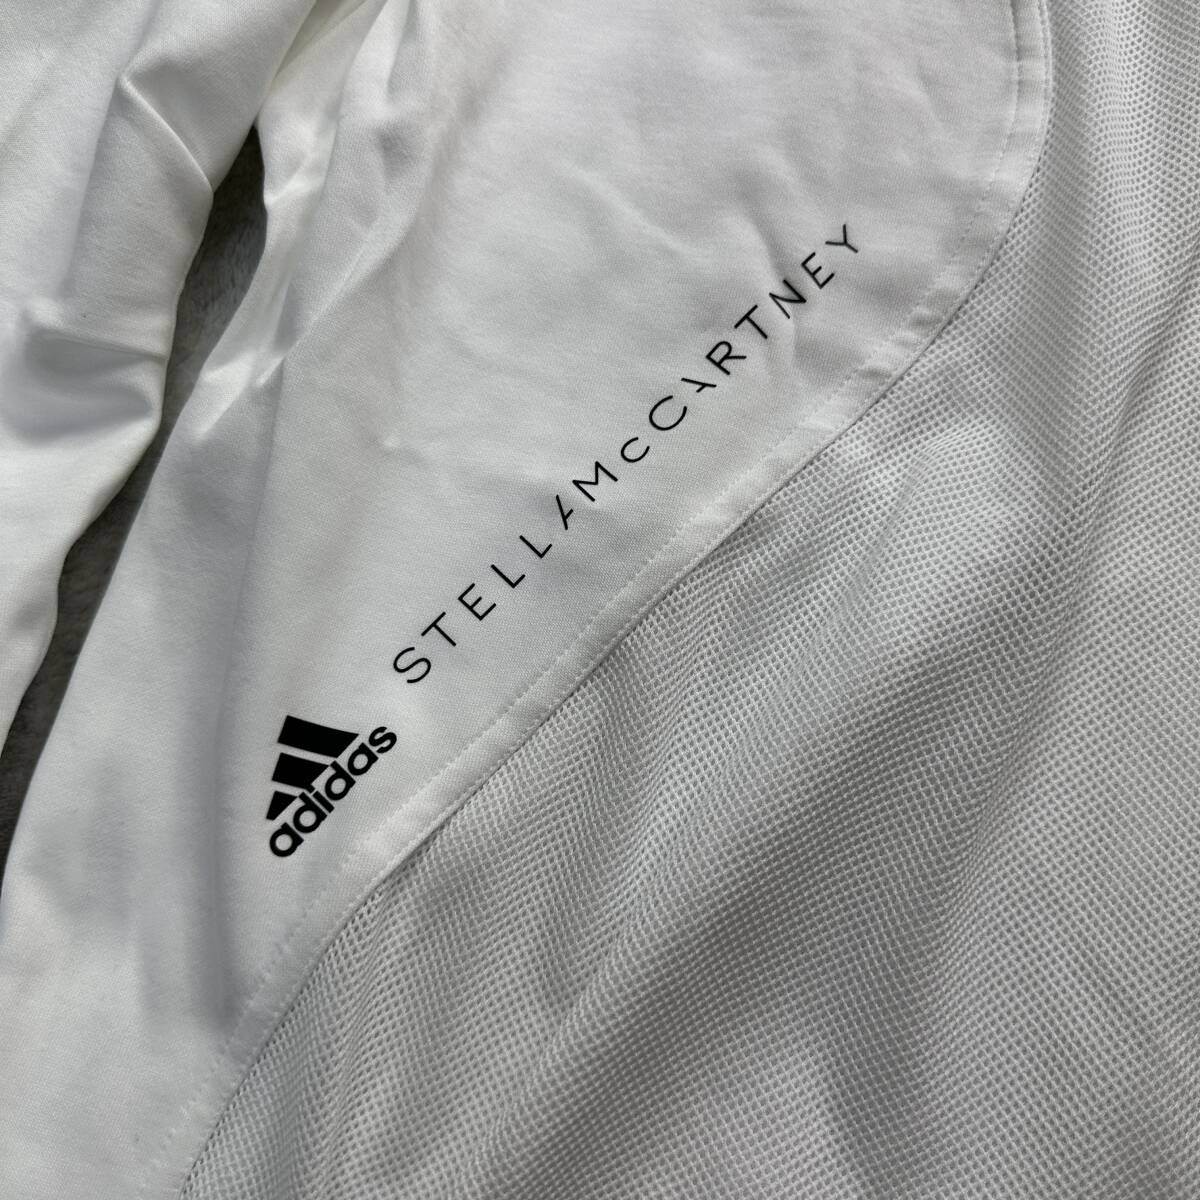  новый товар не использовался XL размер adidas by Stella McCartney Adidas Stella McCartney long T футболка tops сетка сотрудничество белый 